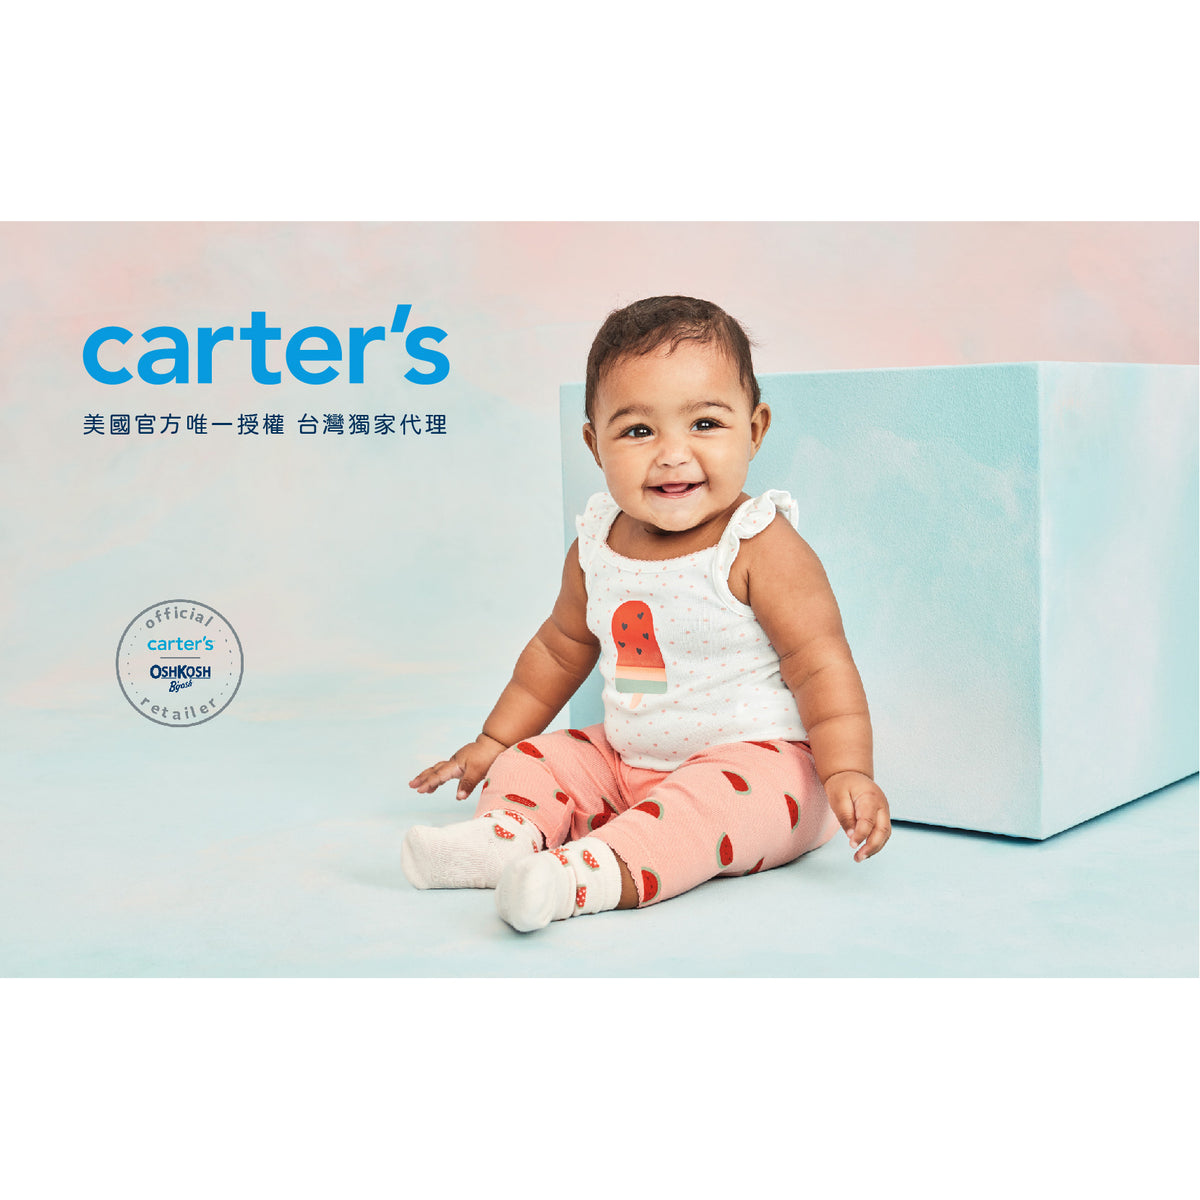 Carter's 米灰抽繩長褲(6M-24M)